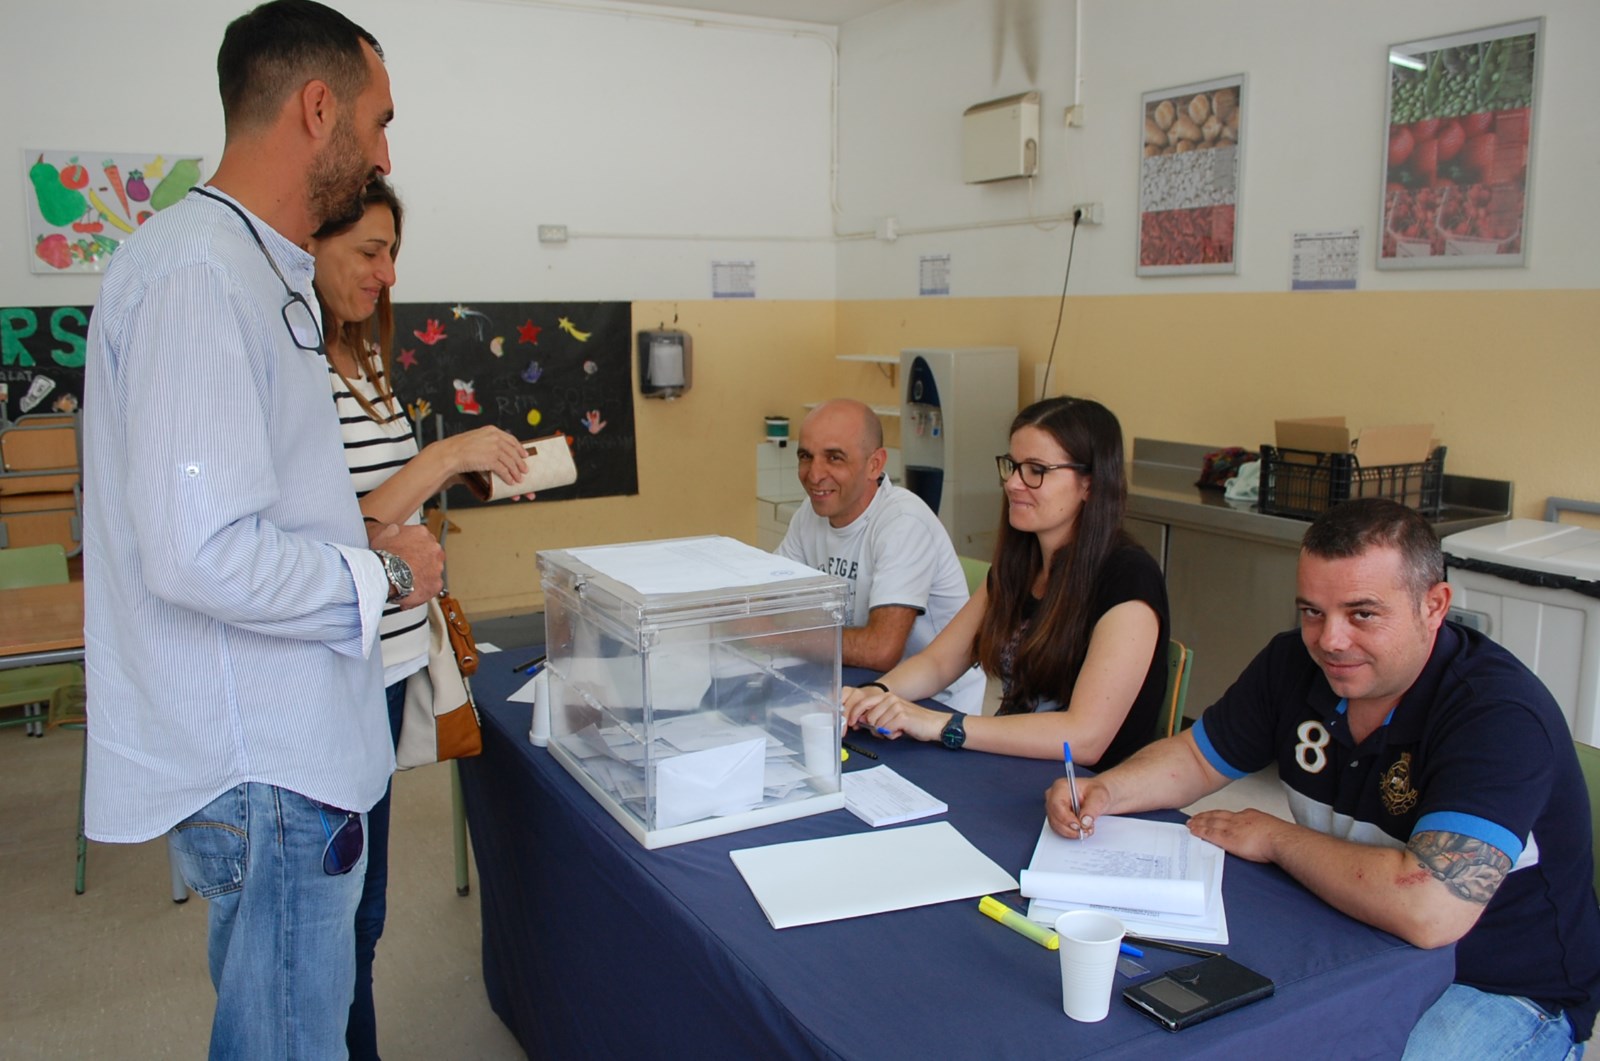 Votacions a l'Escola Labandria. 24 de maig de 2015. Eleccions municipals